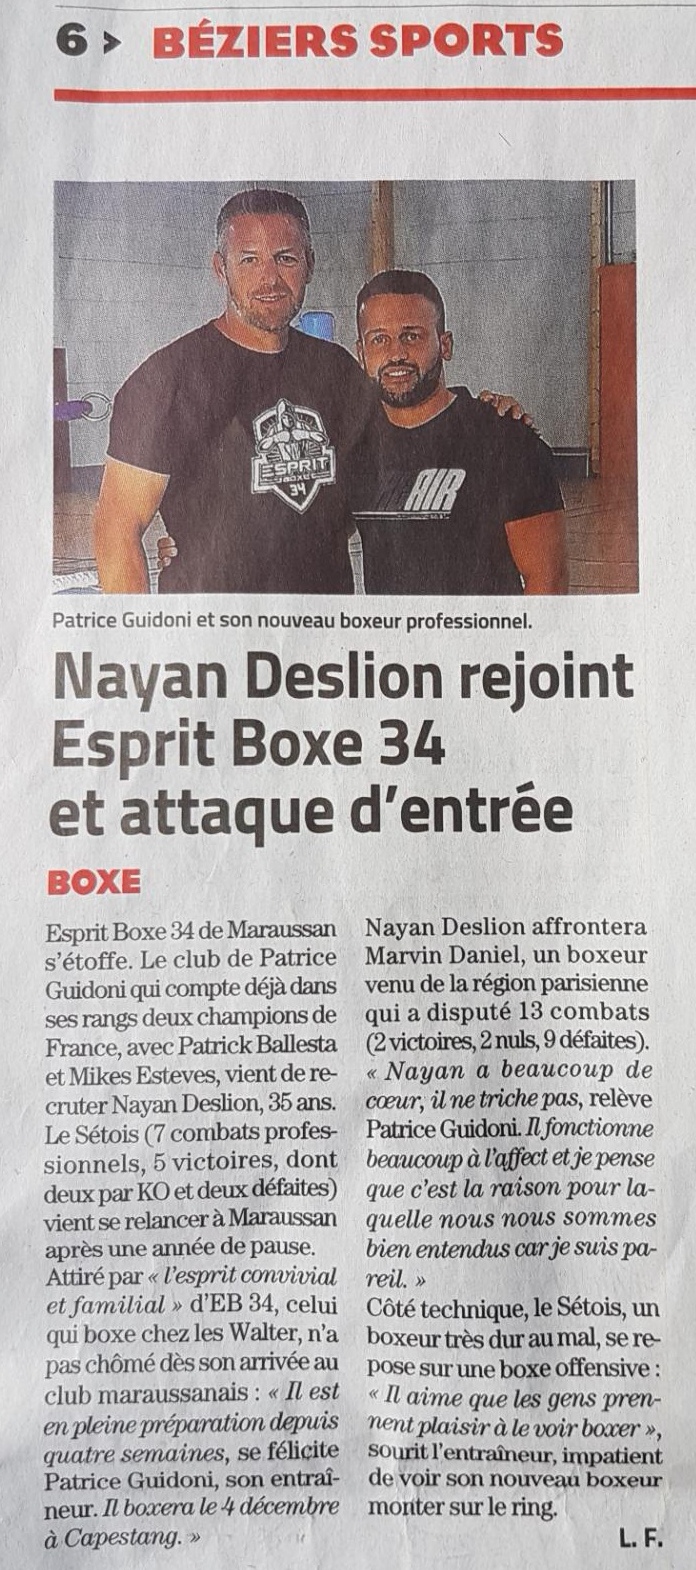 Nayan DESLION rejoint Esprit Boxe 34 et attaque d'entrée